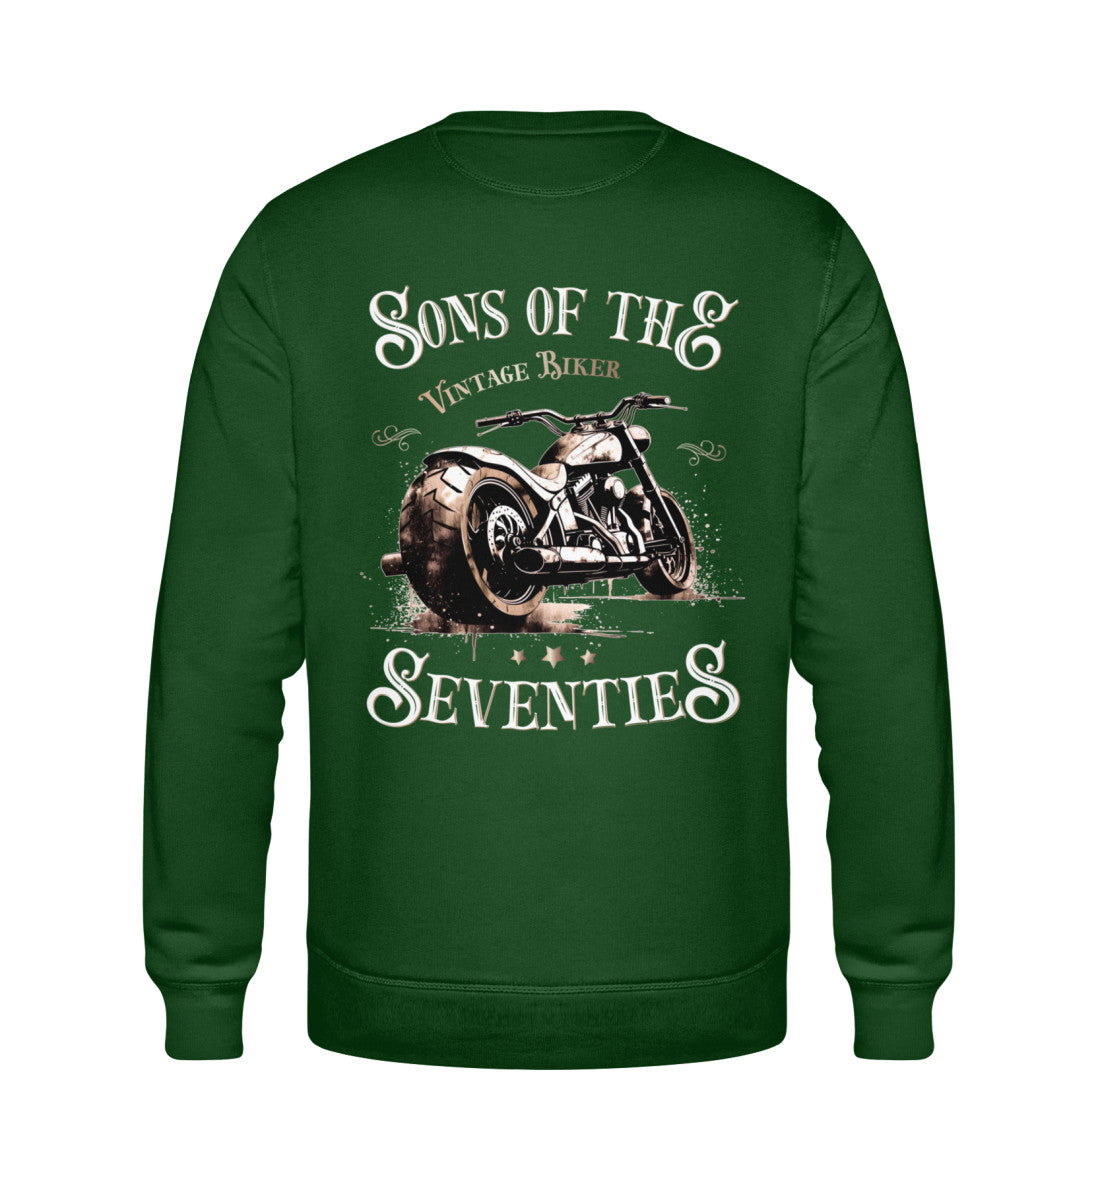 Ein Sweatshirt für Motorradfahrer von Wingbikers mit dem Aufdruck, Sons of the Seventies - Vintage Biker, als Back Print, in dunkegrün.